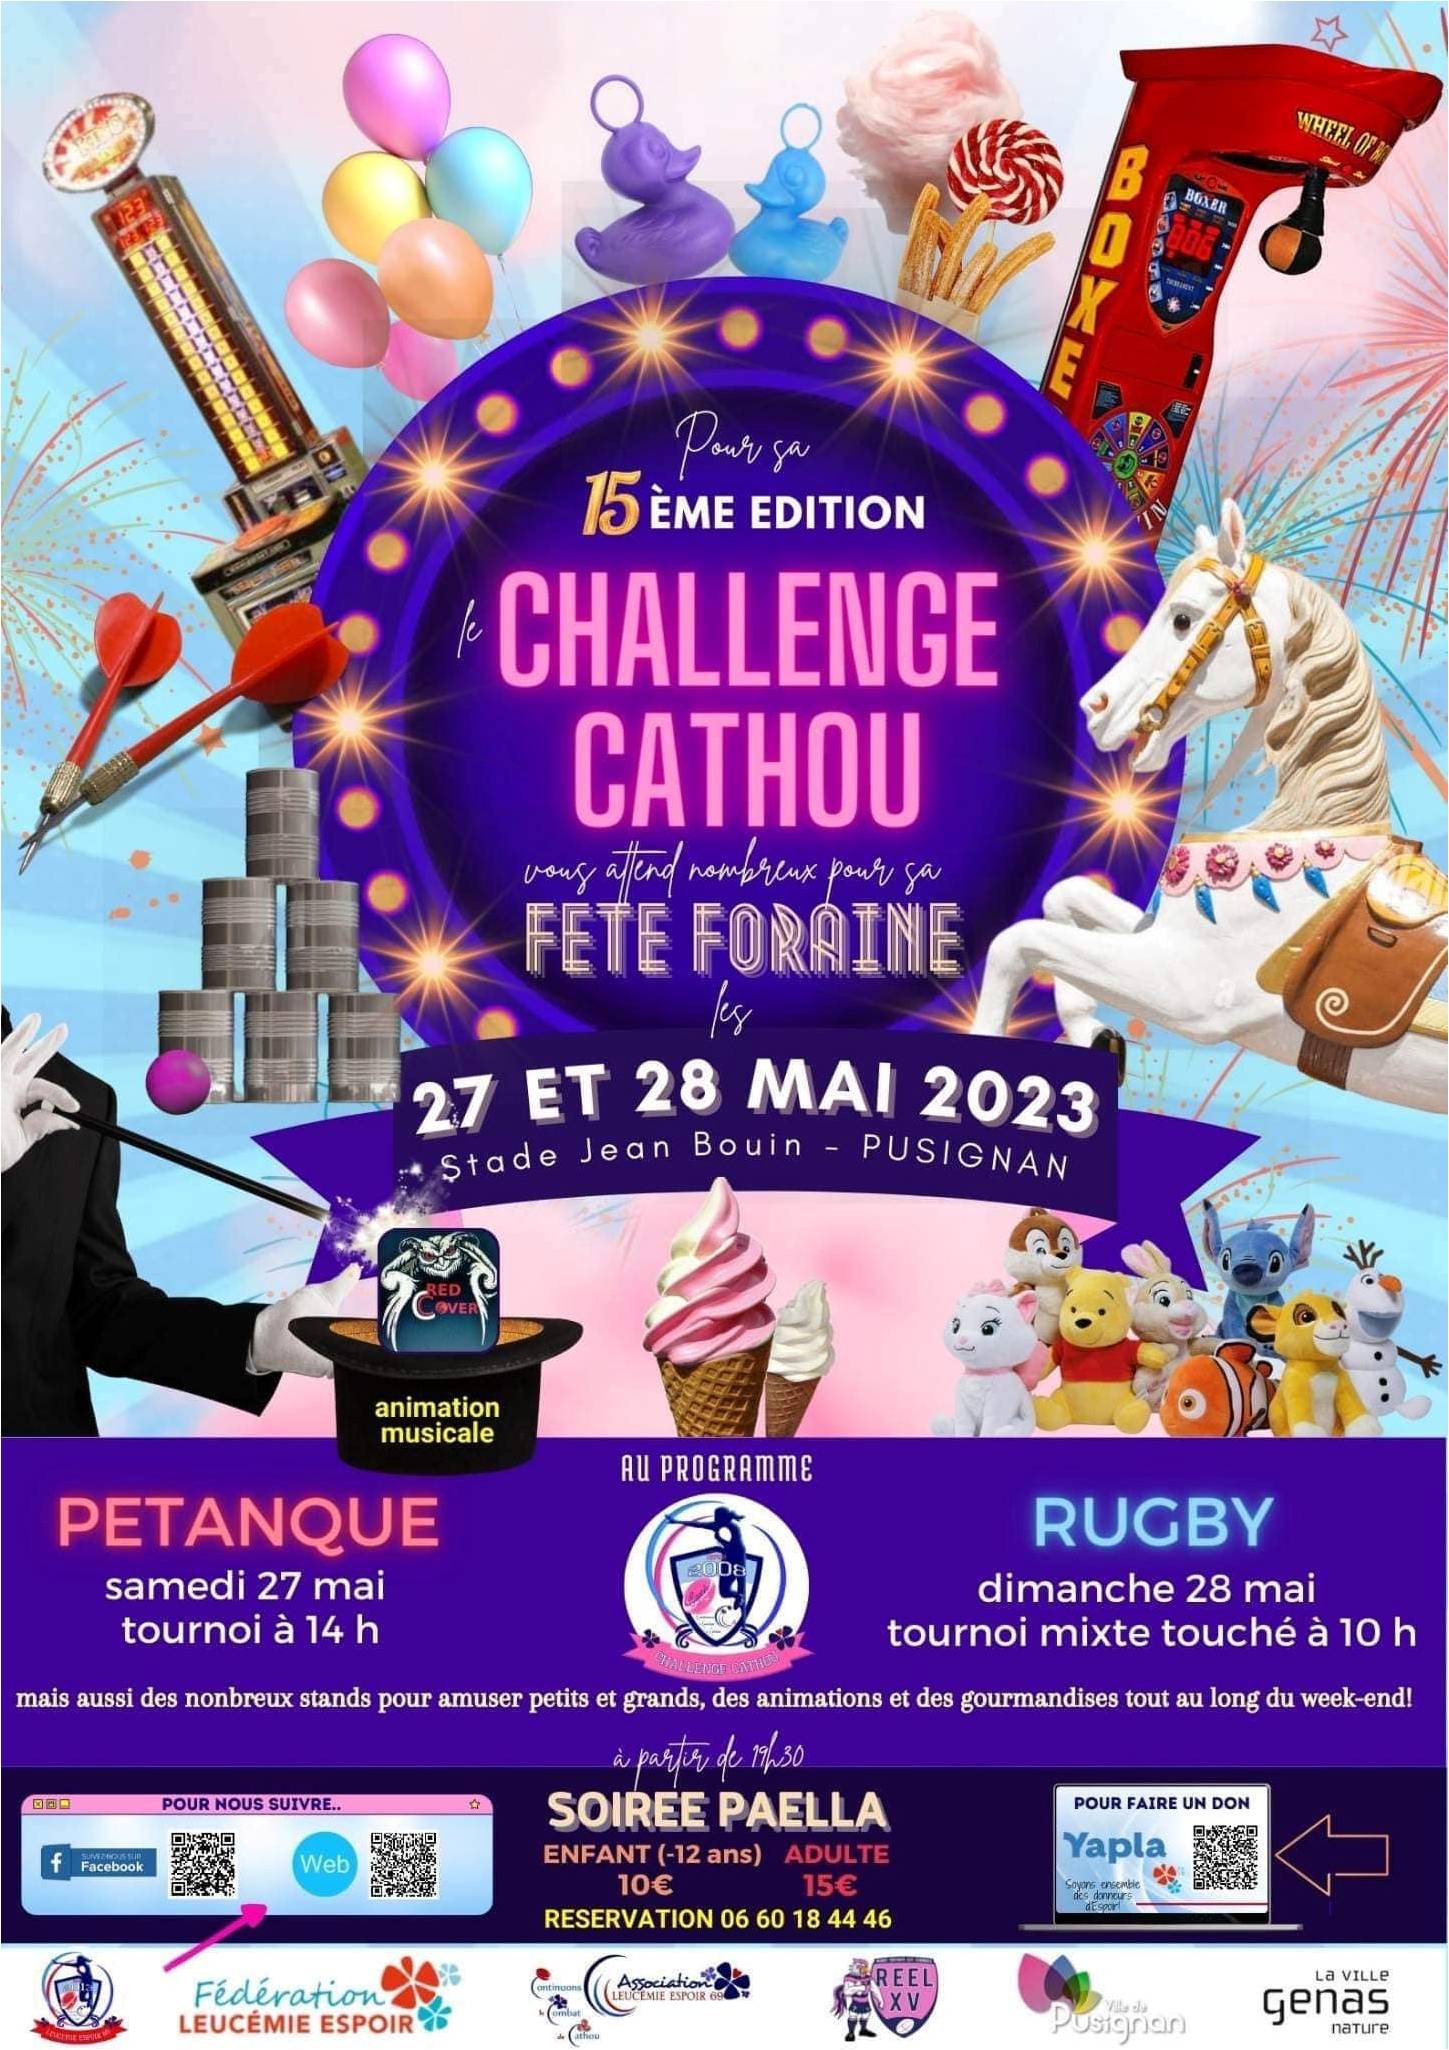 27-28 MAI 2023 – 15ième Edition du CHALLENGE CATHOU